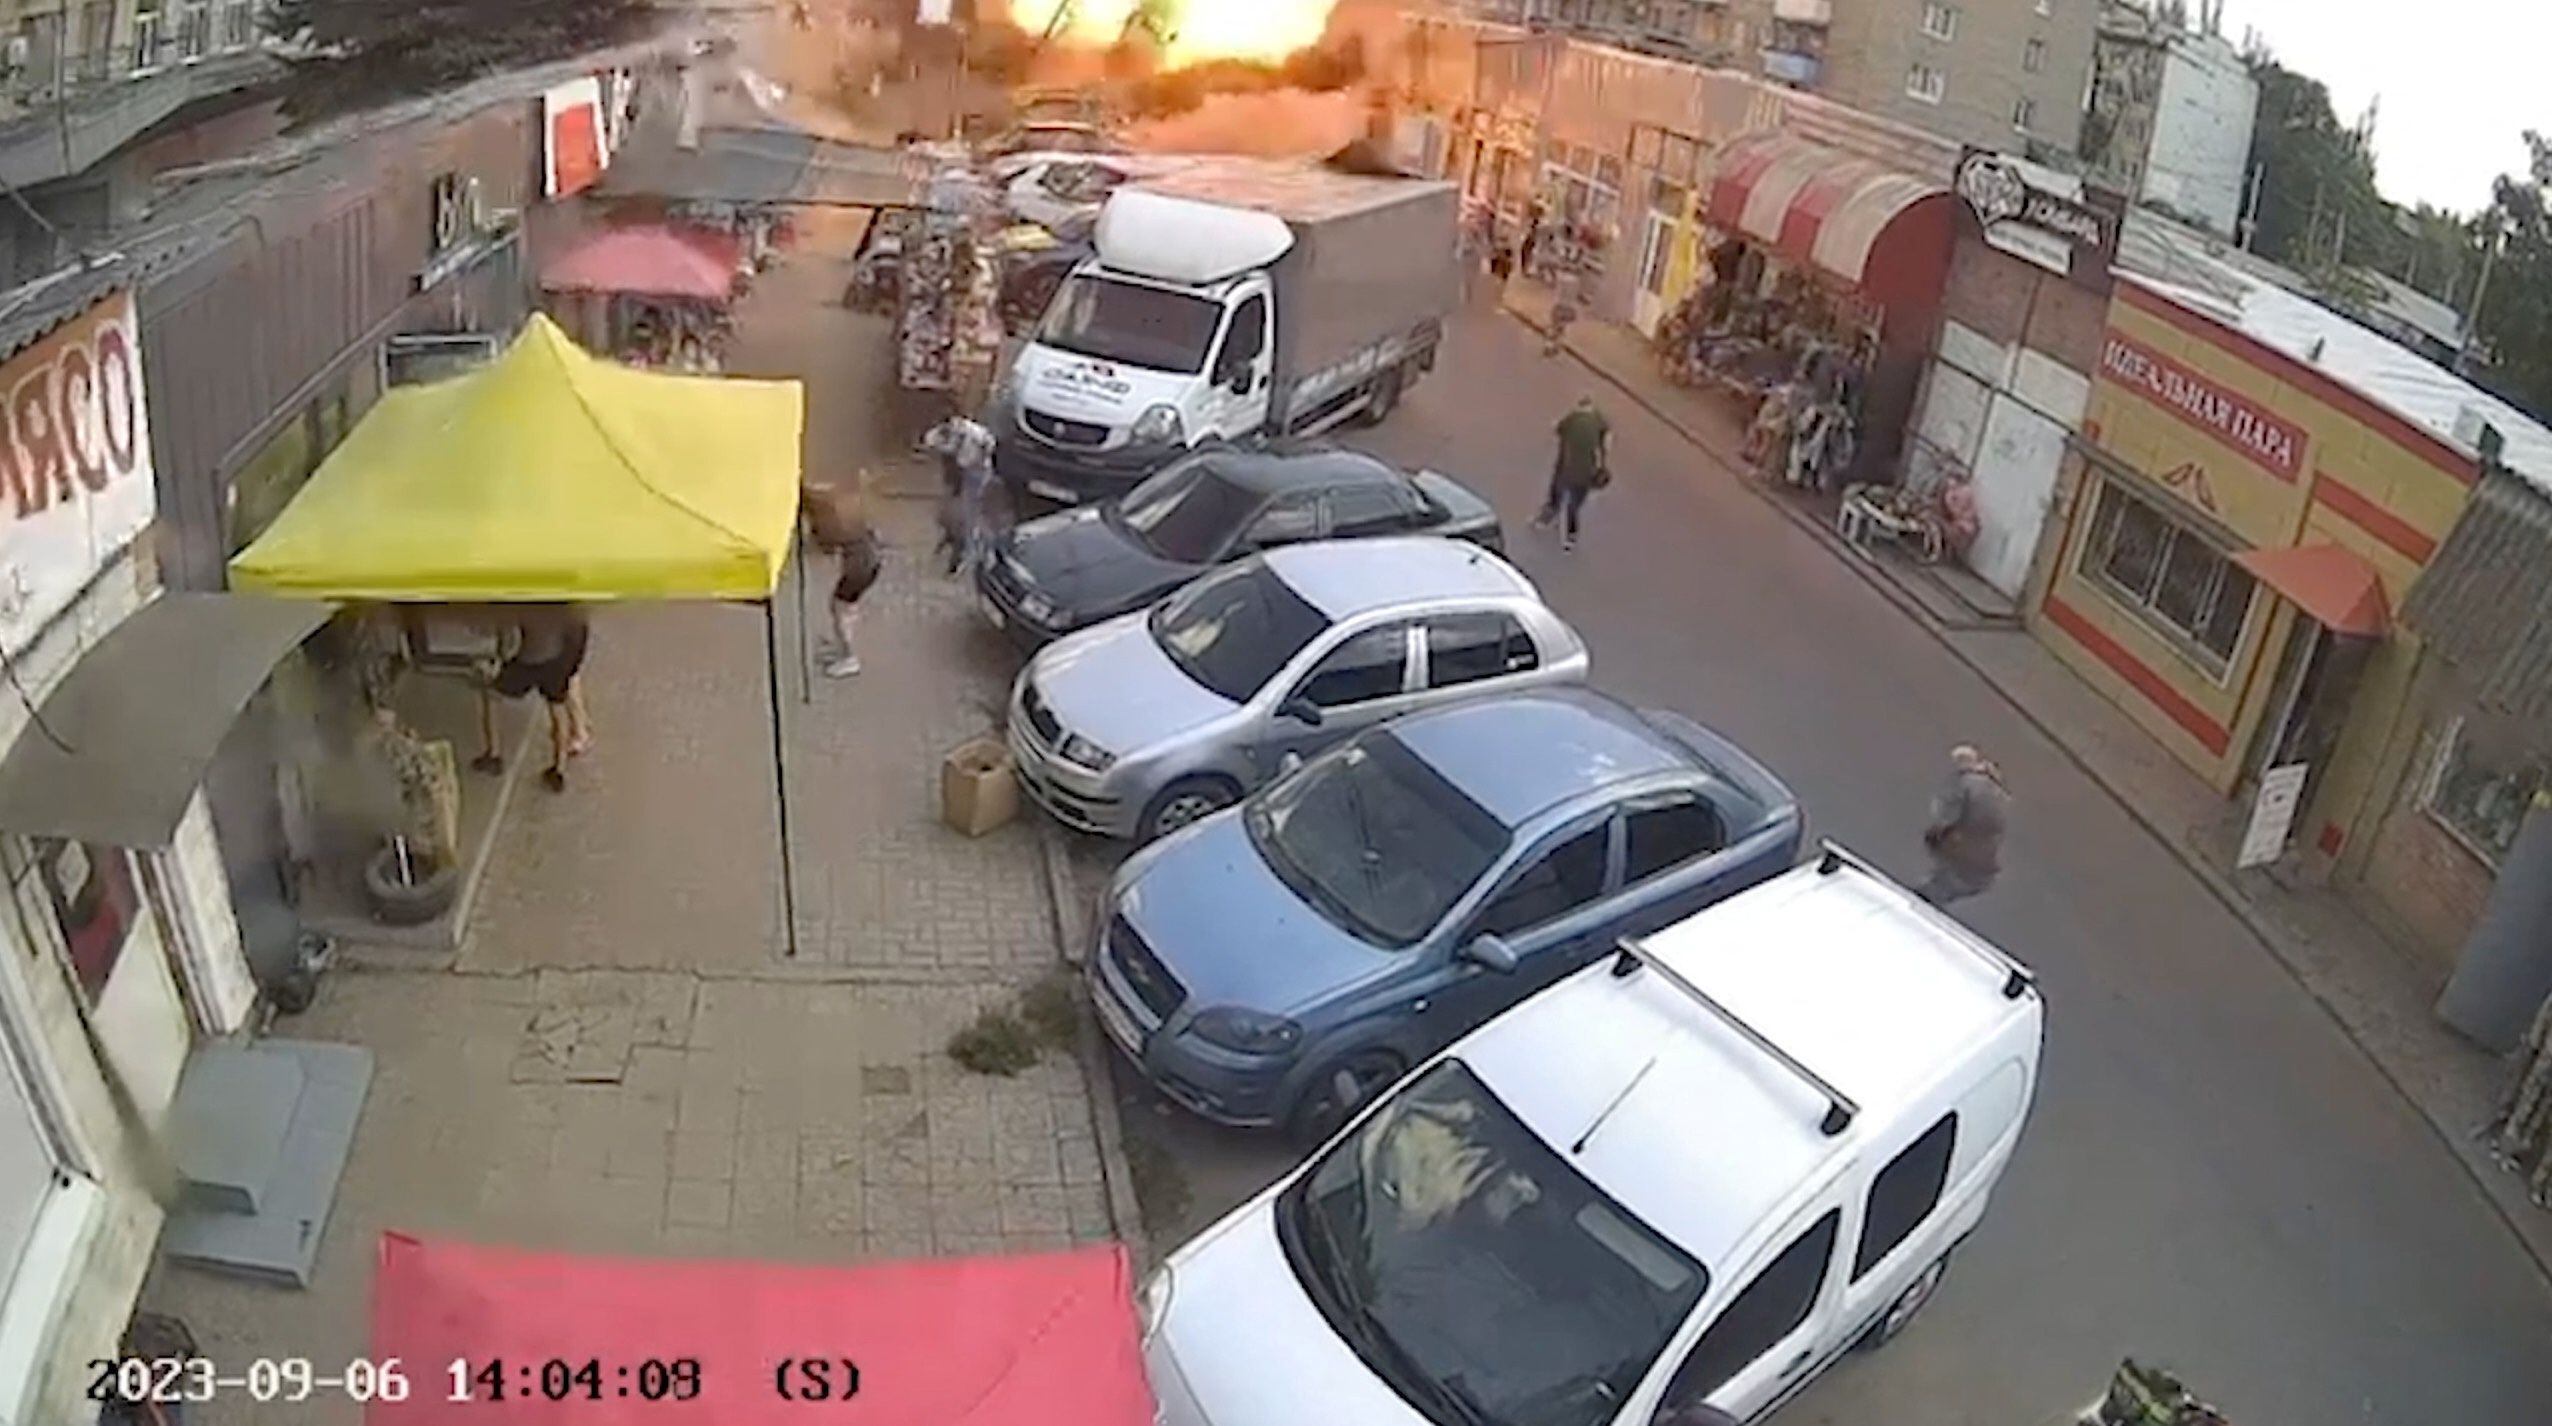 El momento de la deflagración en el mercado de Kostiantynivka (Volodimir Zelensky/Telegram/REUTERS)